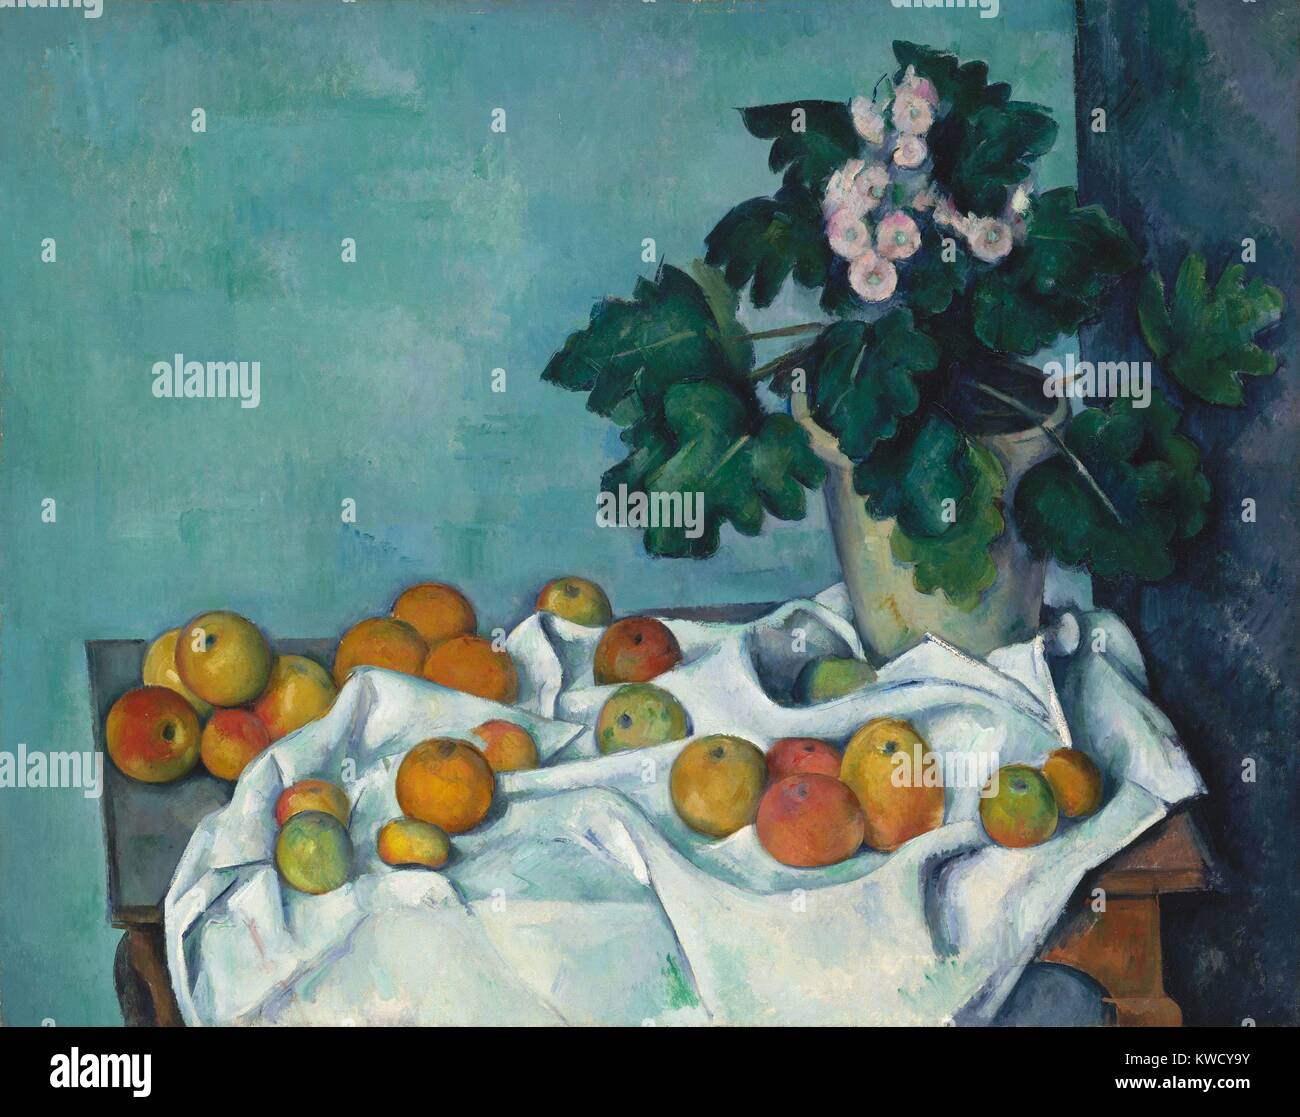 Natura morta con mele e un vasetto di primule, di Paul Cezanne, 1890, francese Post-Impressionism. Monet, il maestro pittore impressionista, una volta di proprietà di questa pittura (BSLOC 2017 5 23) Foto Stock